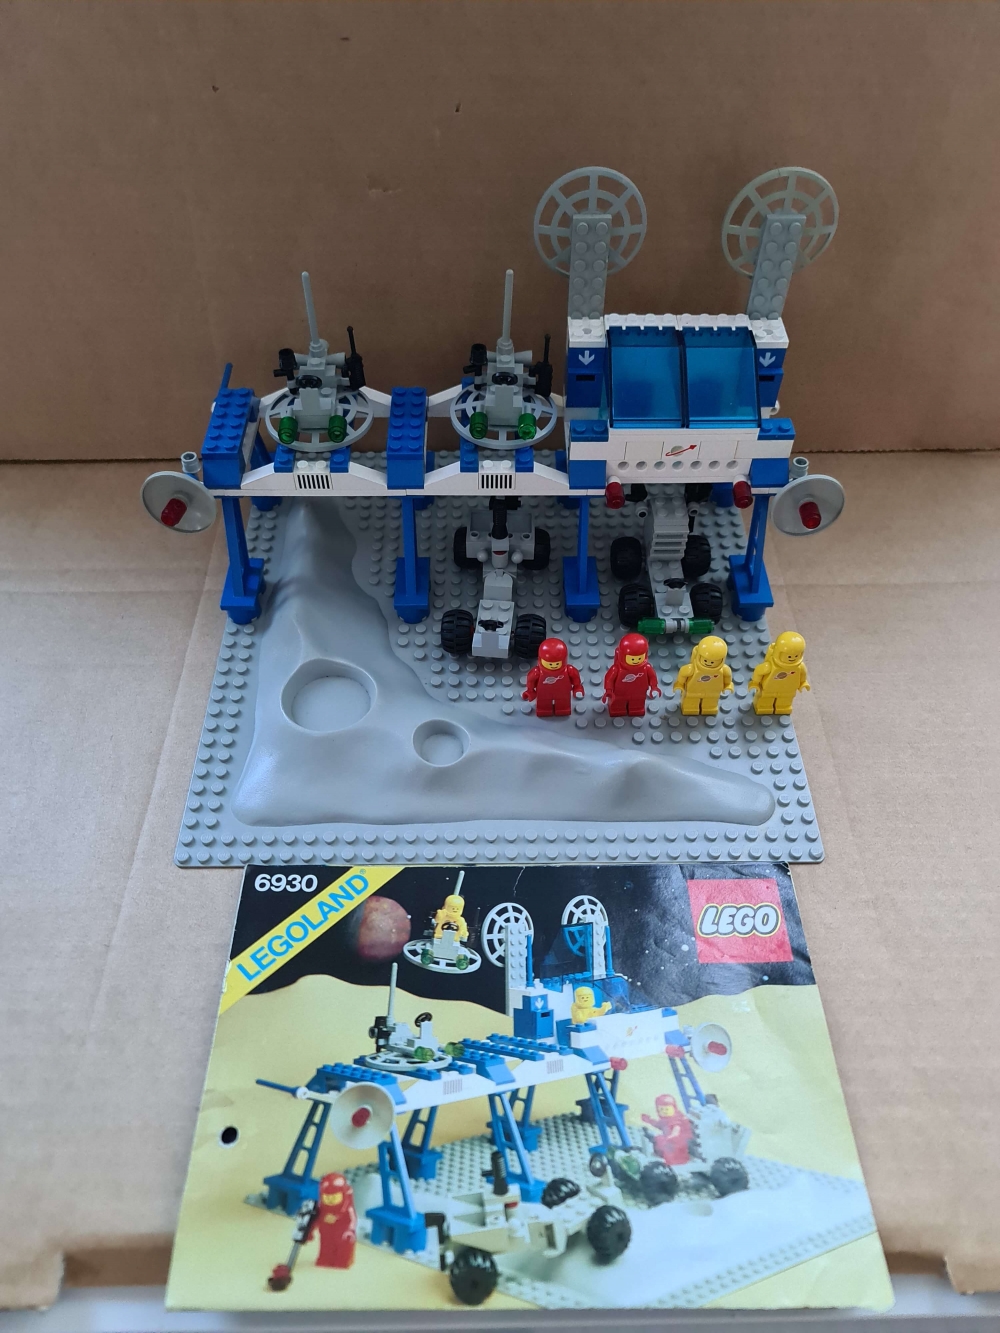 Sett 6930 fra Lego Classic Space serien.
Pent sett. 
100% komplett med manual. 